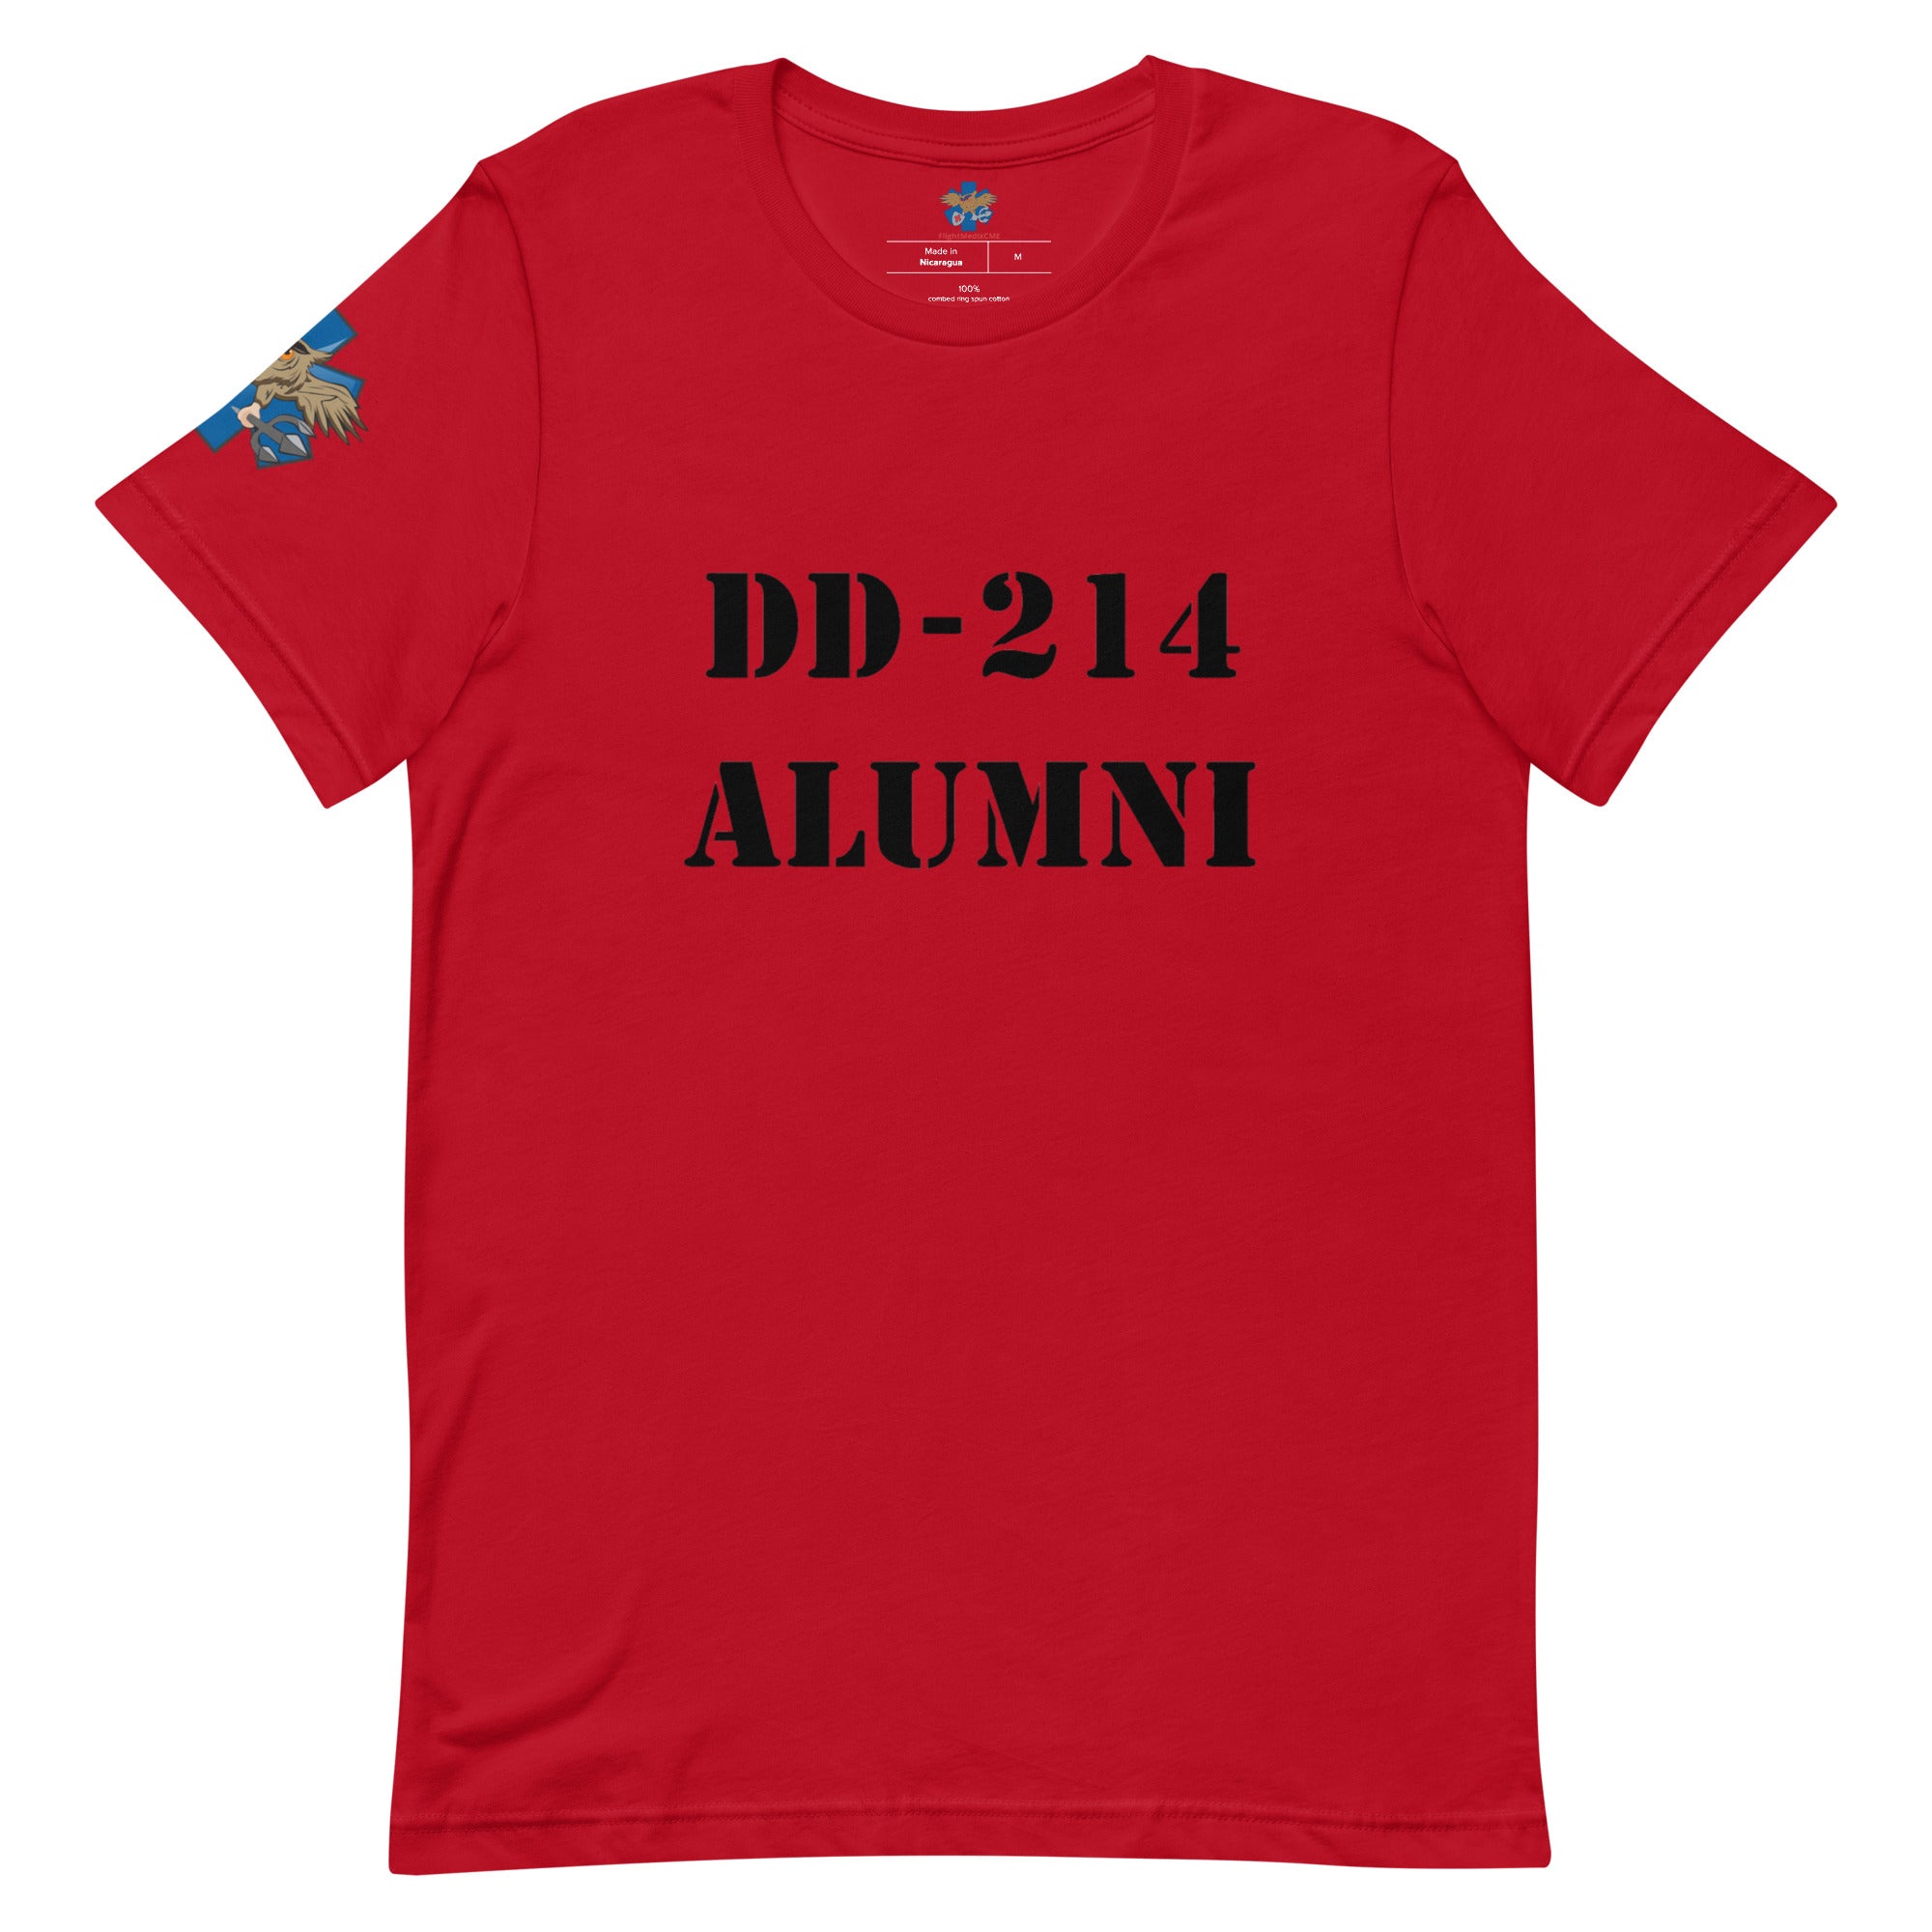 'DD-214 Alumni' t-shirt